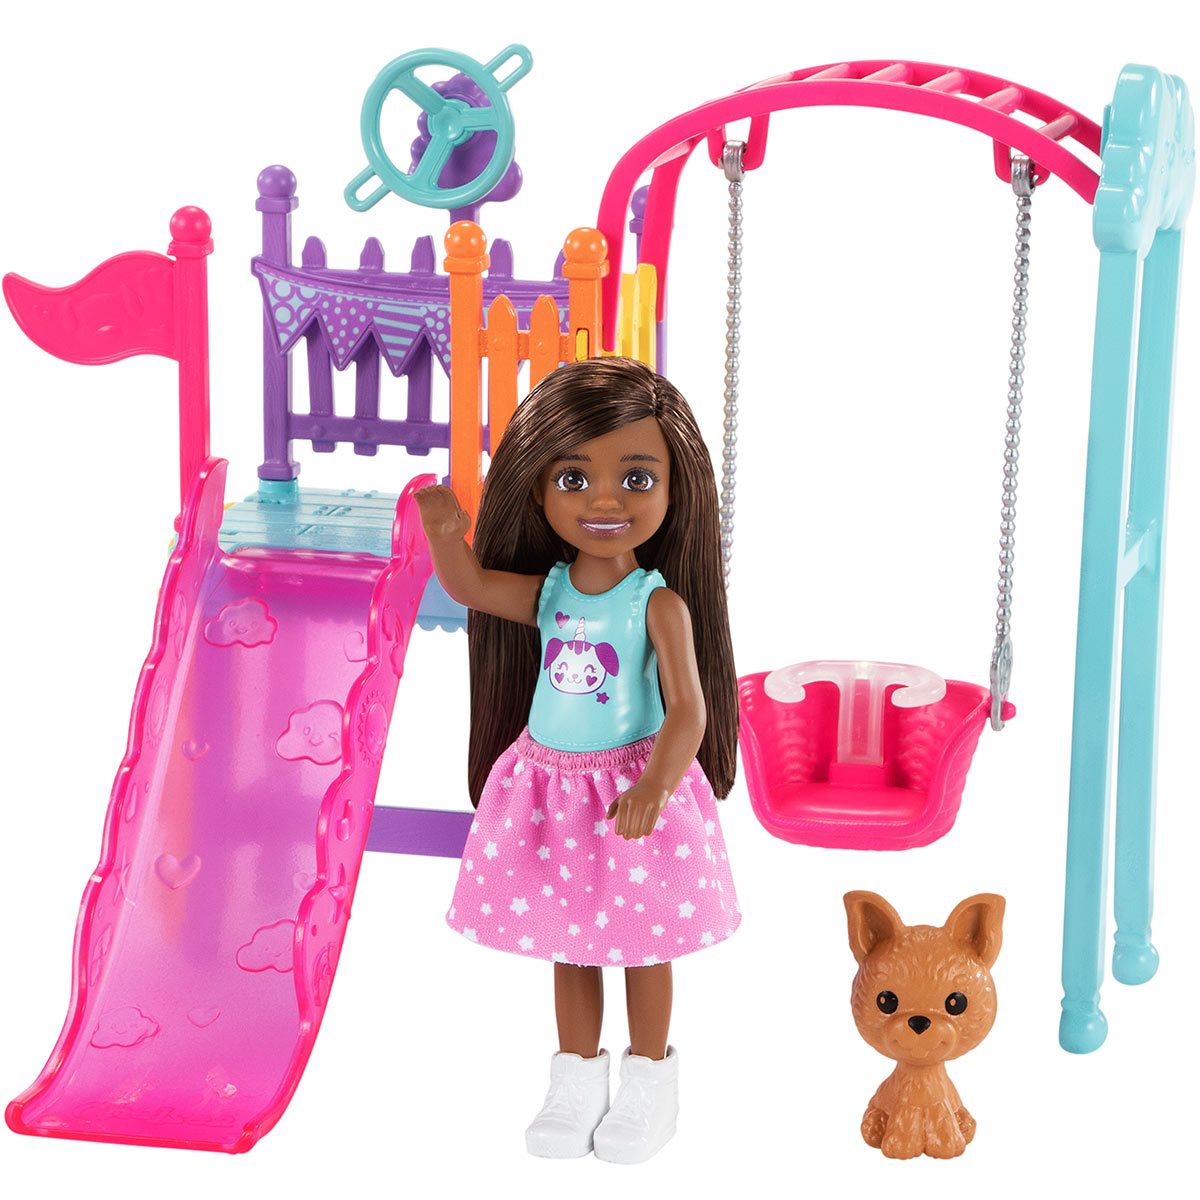 Gelijkwaardig tennis Woordenlijst Barbie Chelsea Swing Set Playset with Doll